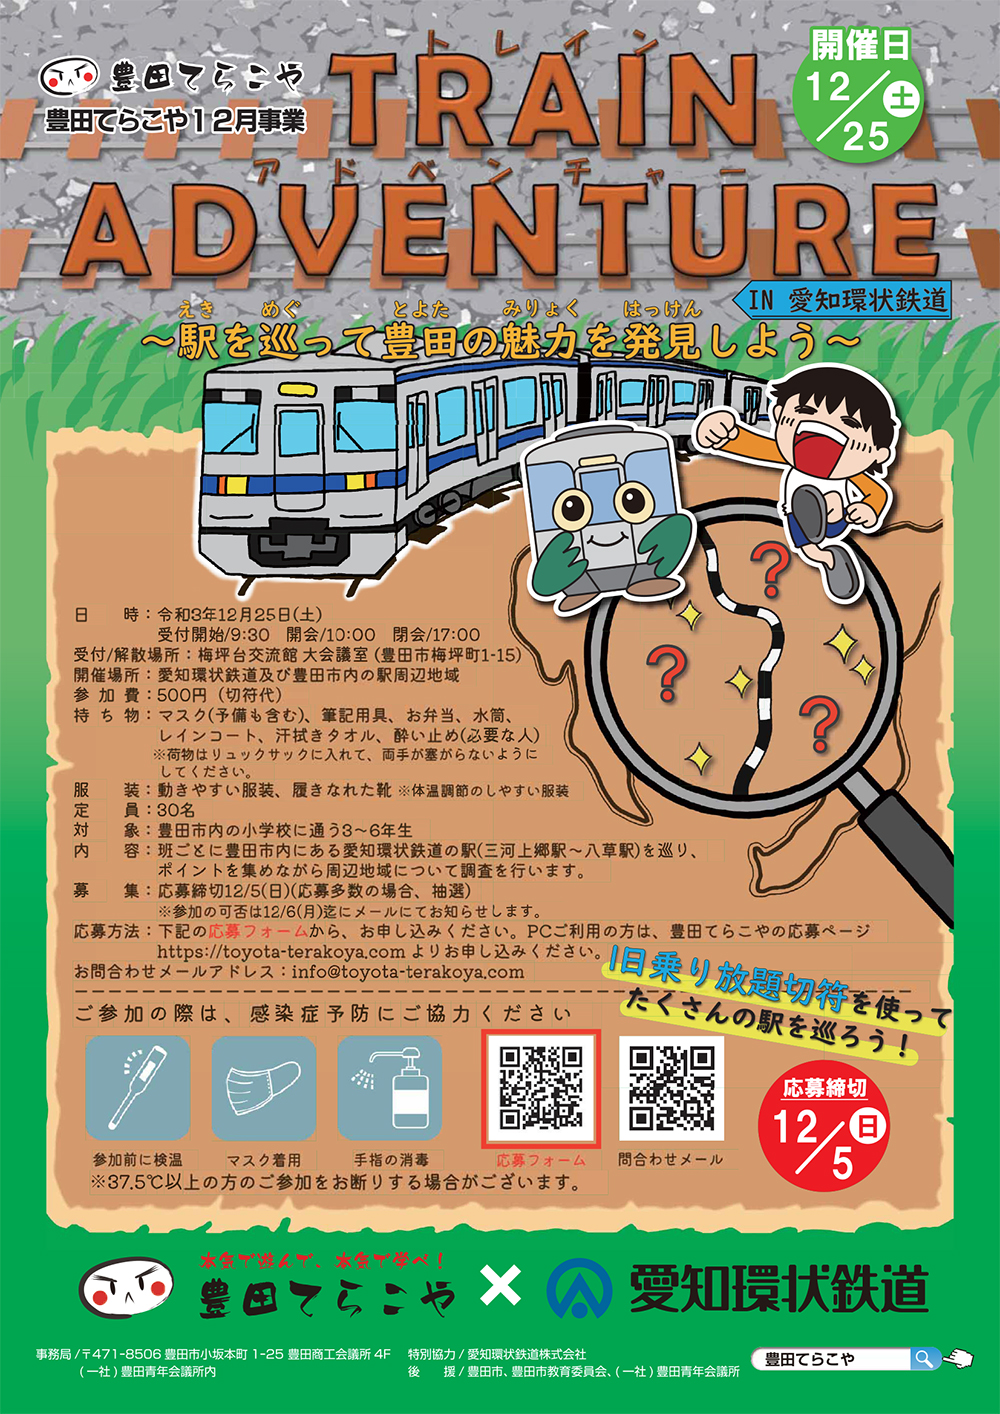 21-11-12-12月事業チラシ TRAIN ADVENTURE -入稿.ai